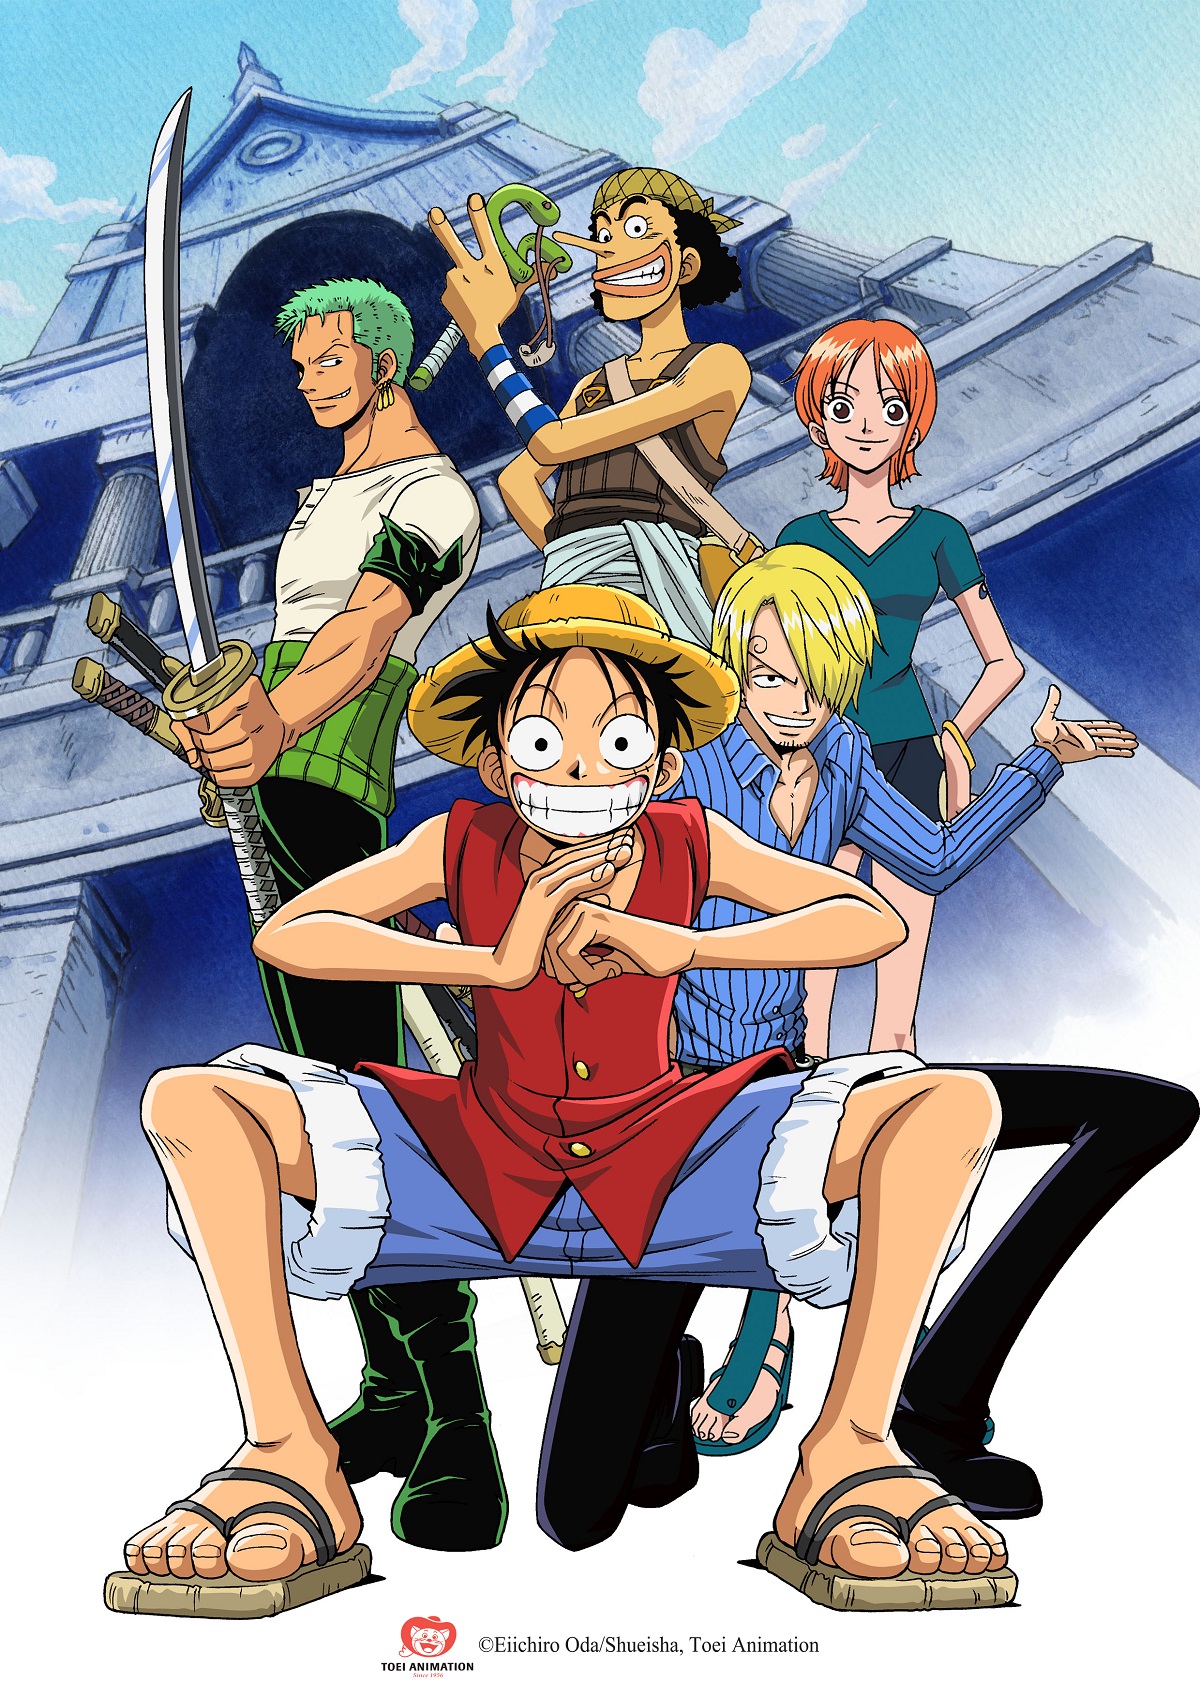 One Piece Việt Nam - một trong những bộ phim anime được yêu thích nhất của Việt Nam. Hãy cùng tận hưởng những giây phút thư giãn với những bức ảnh đẹp và sáng tạo liên quan đến One Piece. Hình ảnh và câu chuyện sẽ đưa bạn đến một thế giới tràn đầy cảm xúc và niềm đam mê.